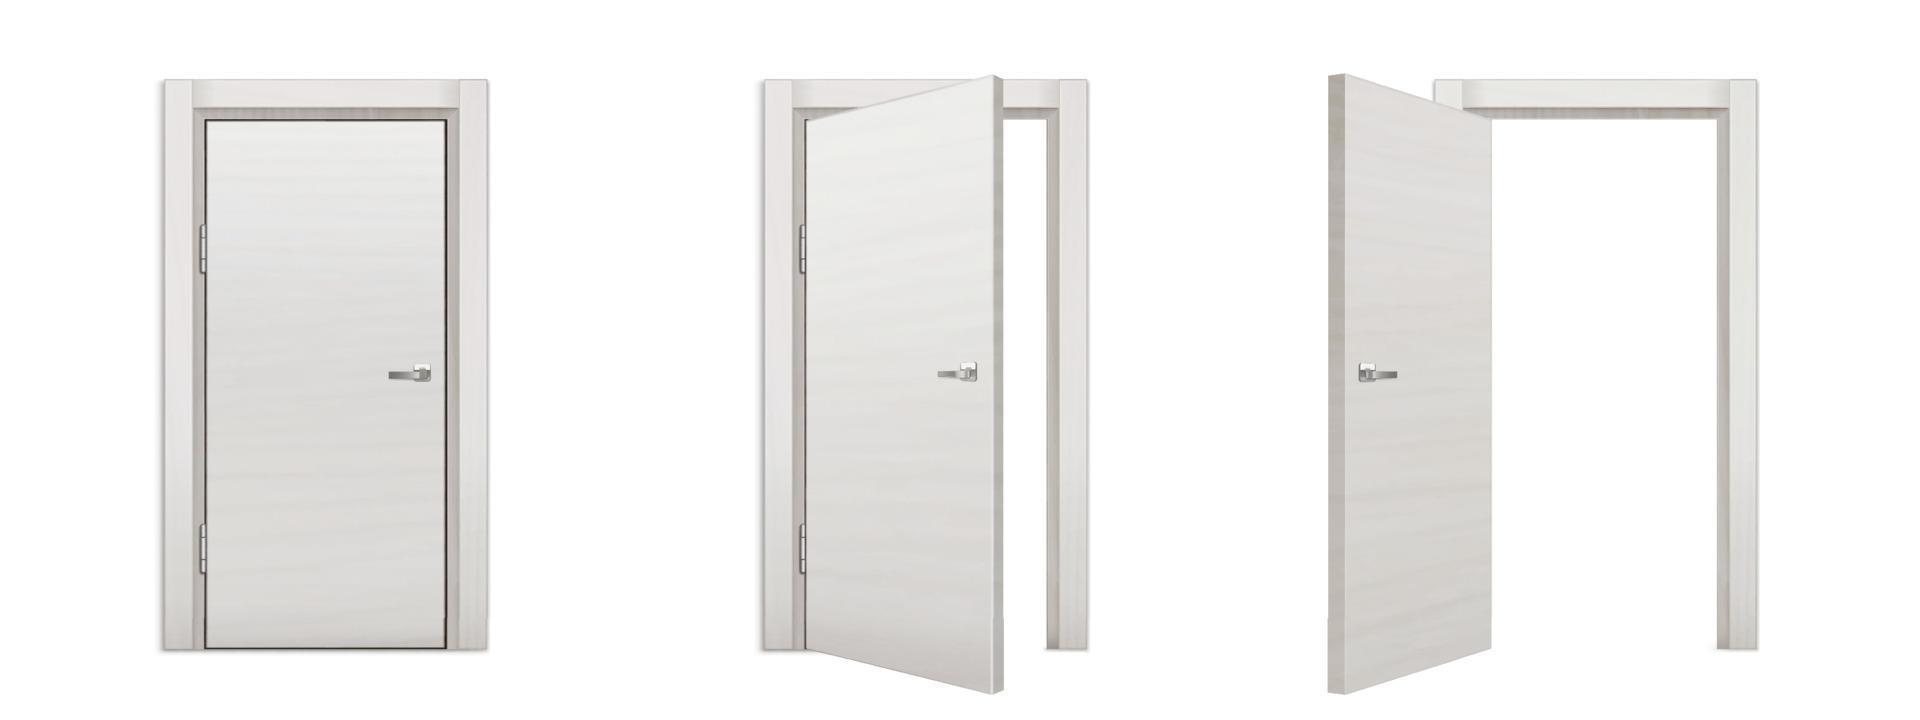 wit houten deur in open, gesloten, op een kier positie vector